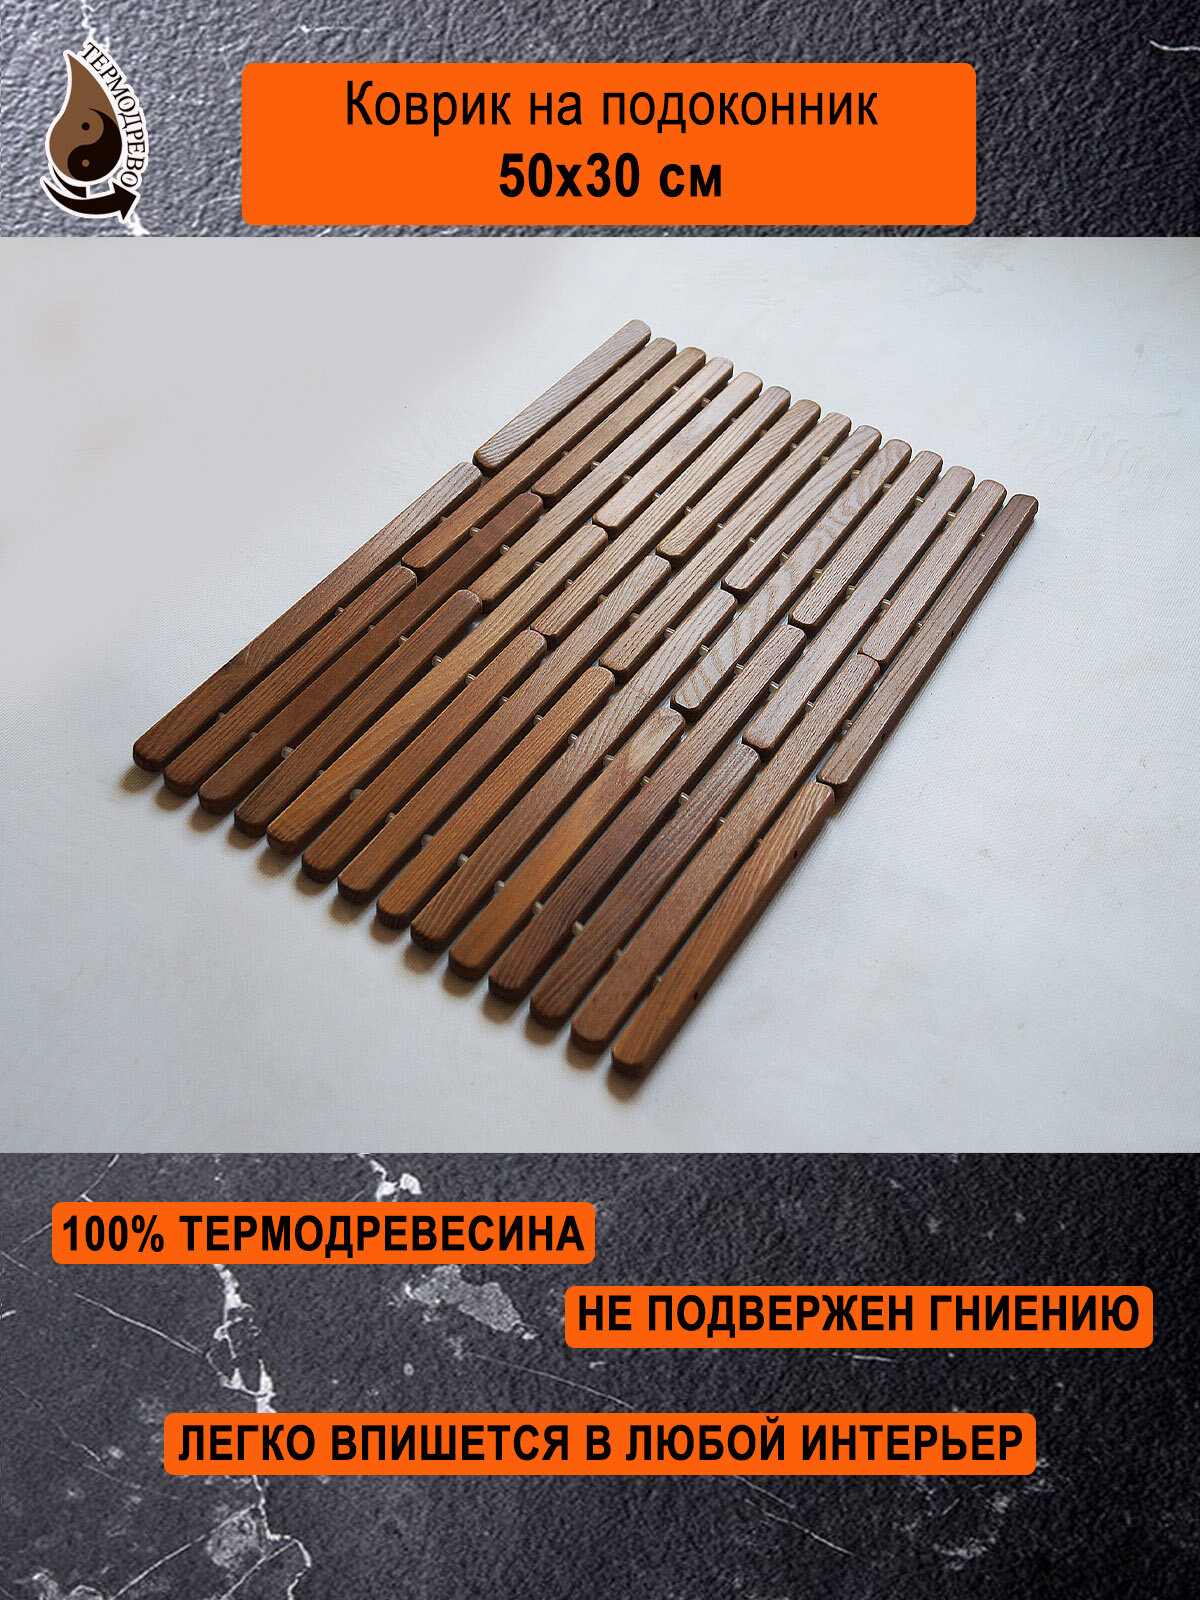 Ковер деревянный влагостойкий универсальный 50х30 см на подоконник / придверный / прикроватный термодрево из массива термо древесины